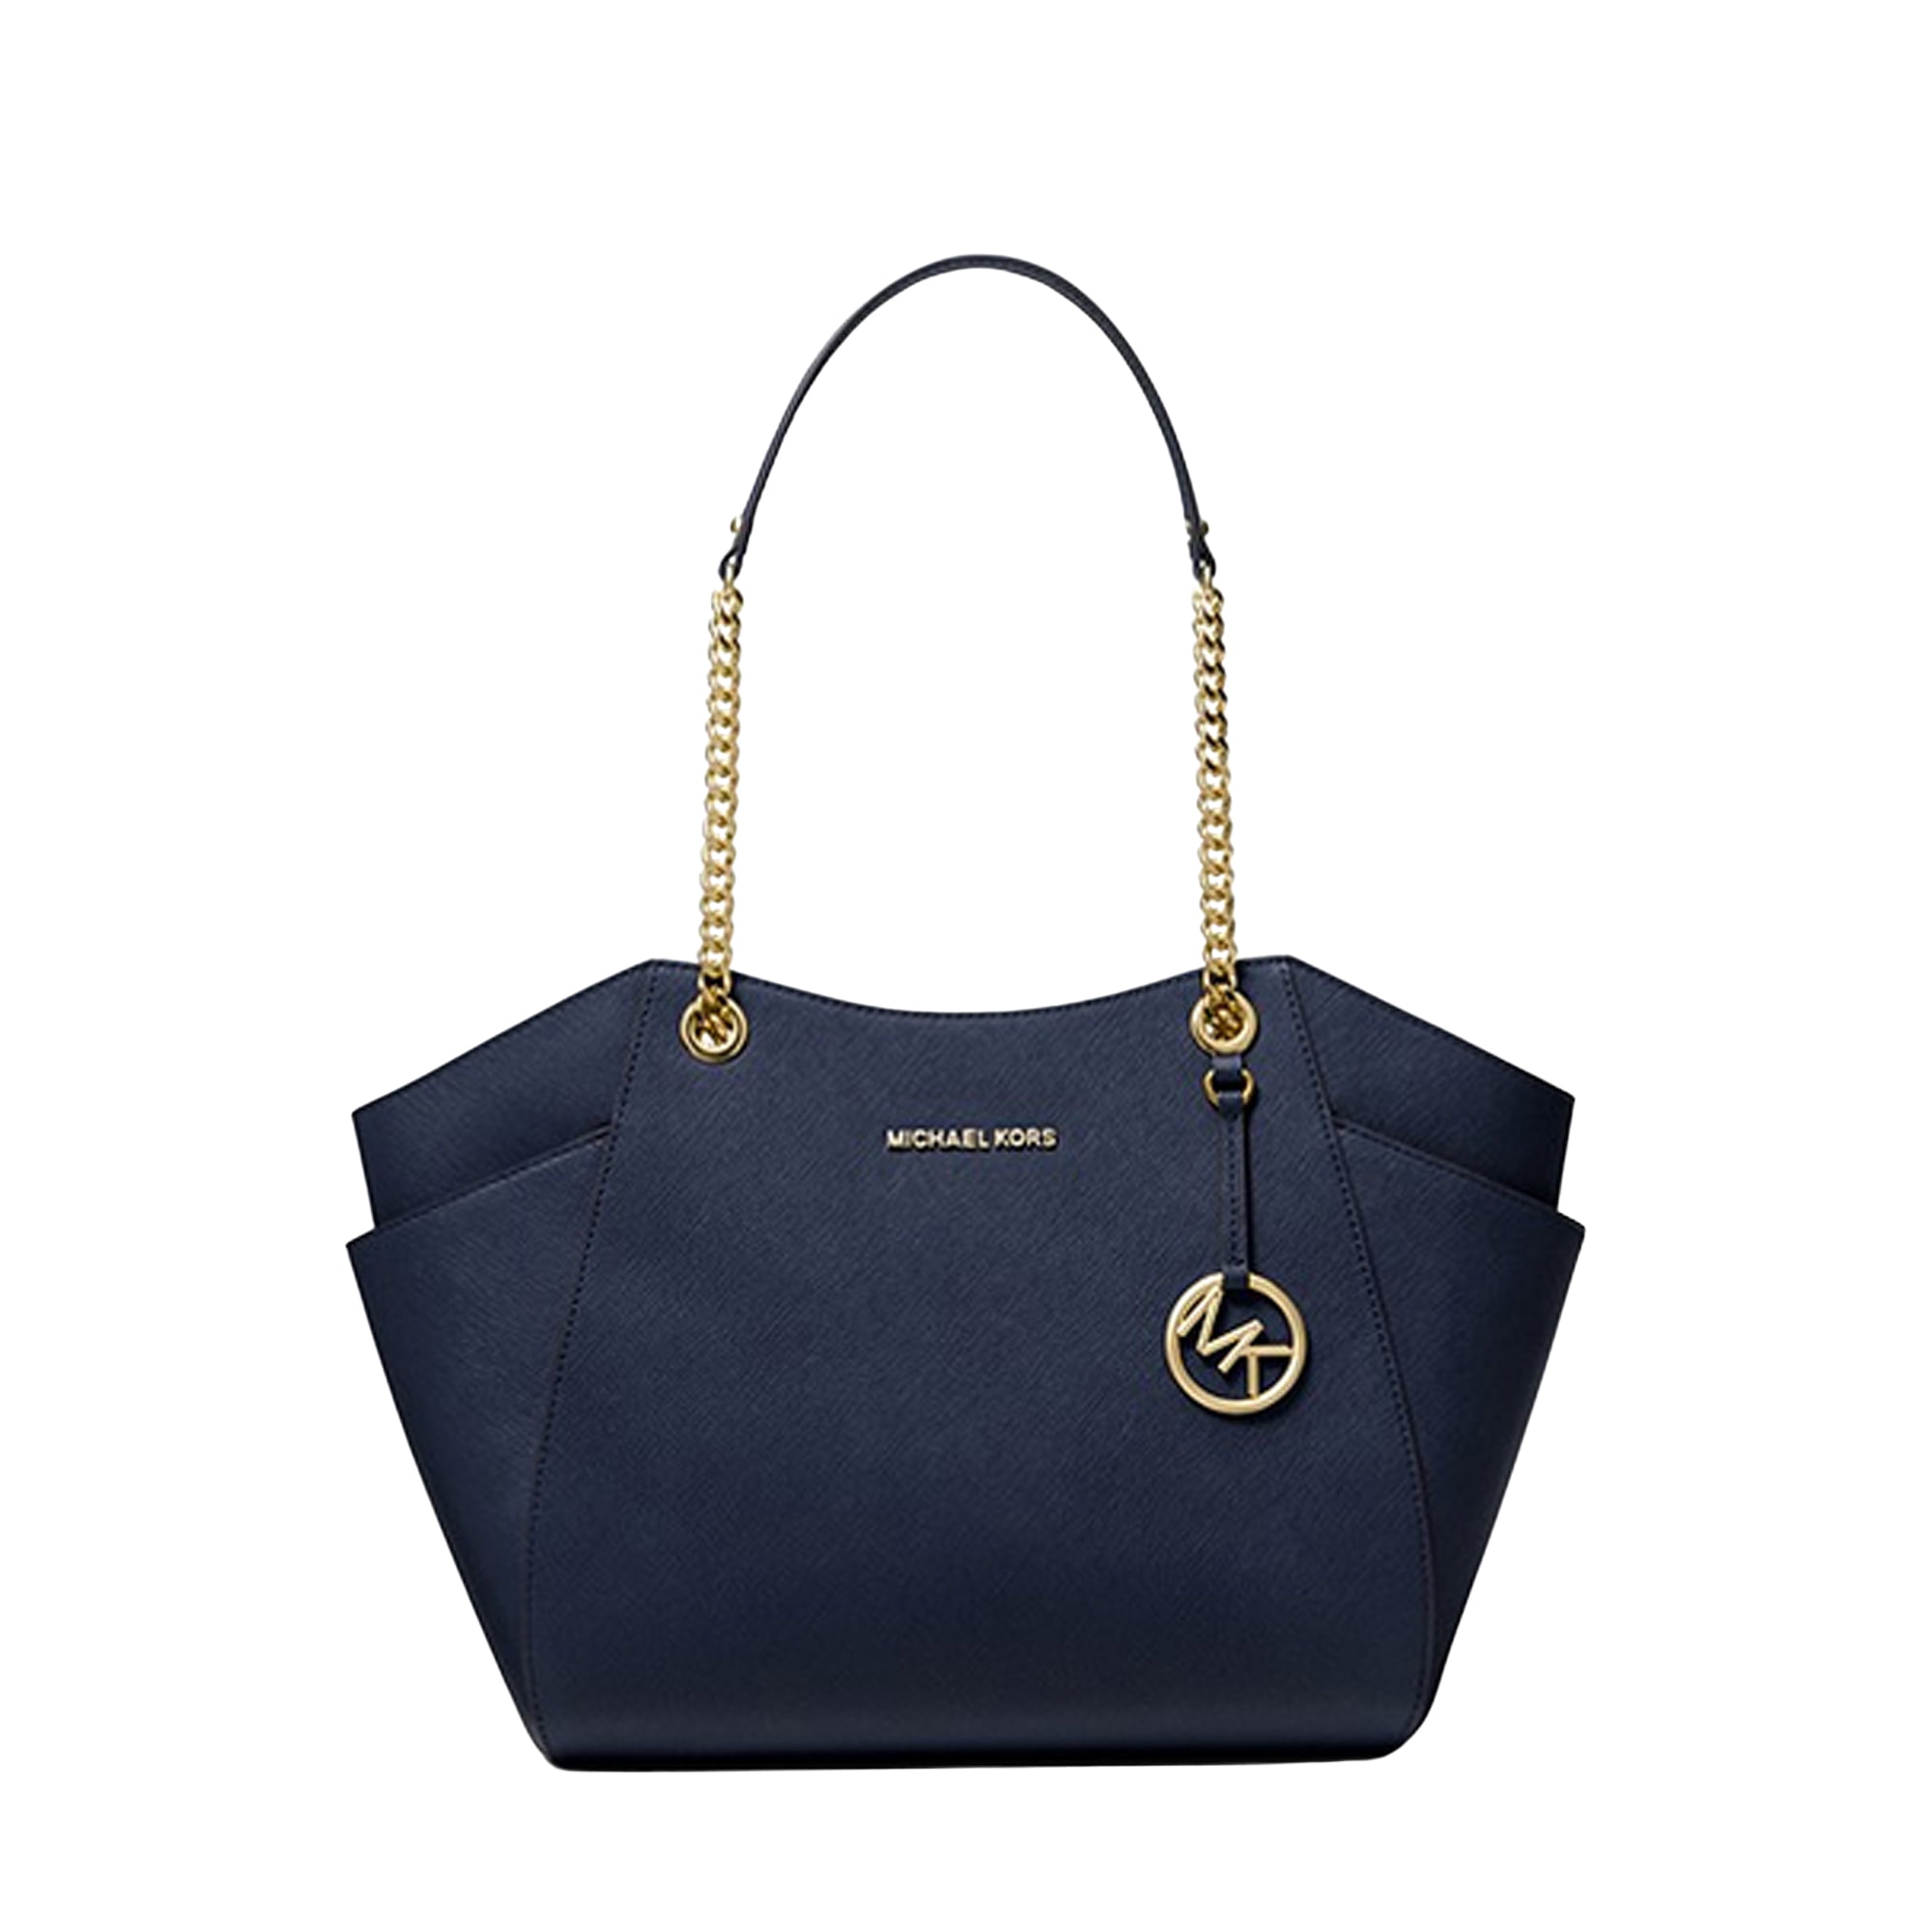 MK navy blue handbag